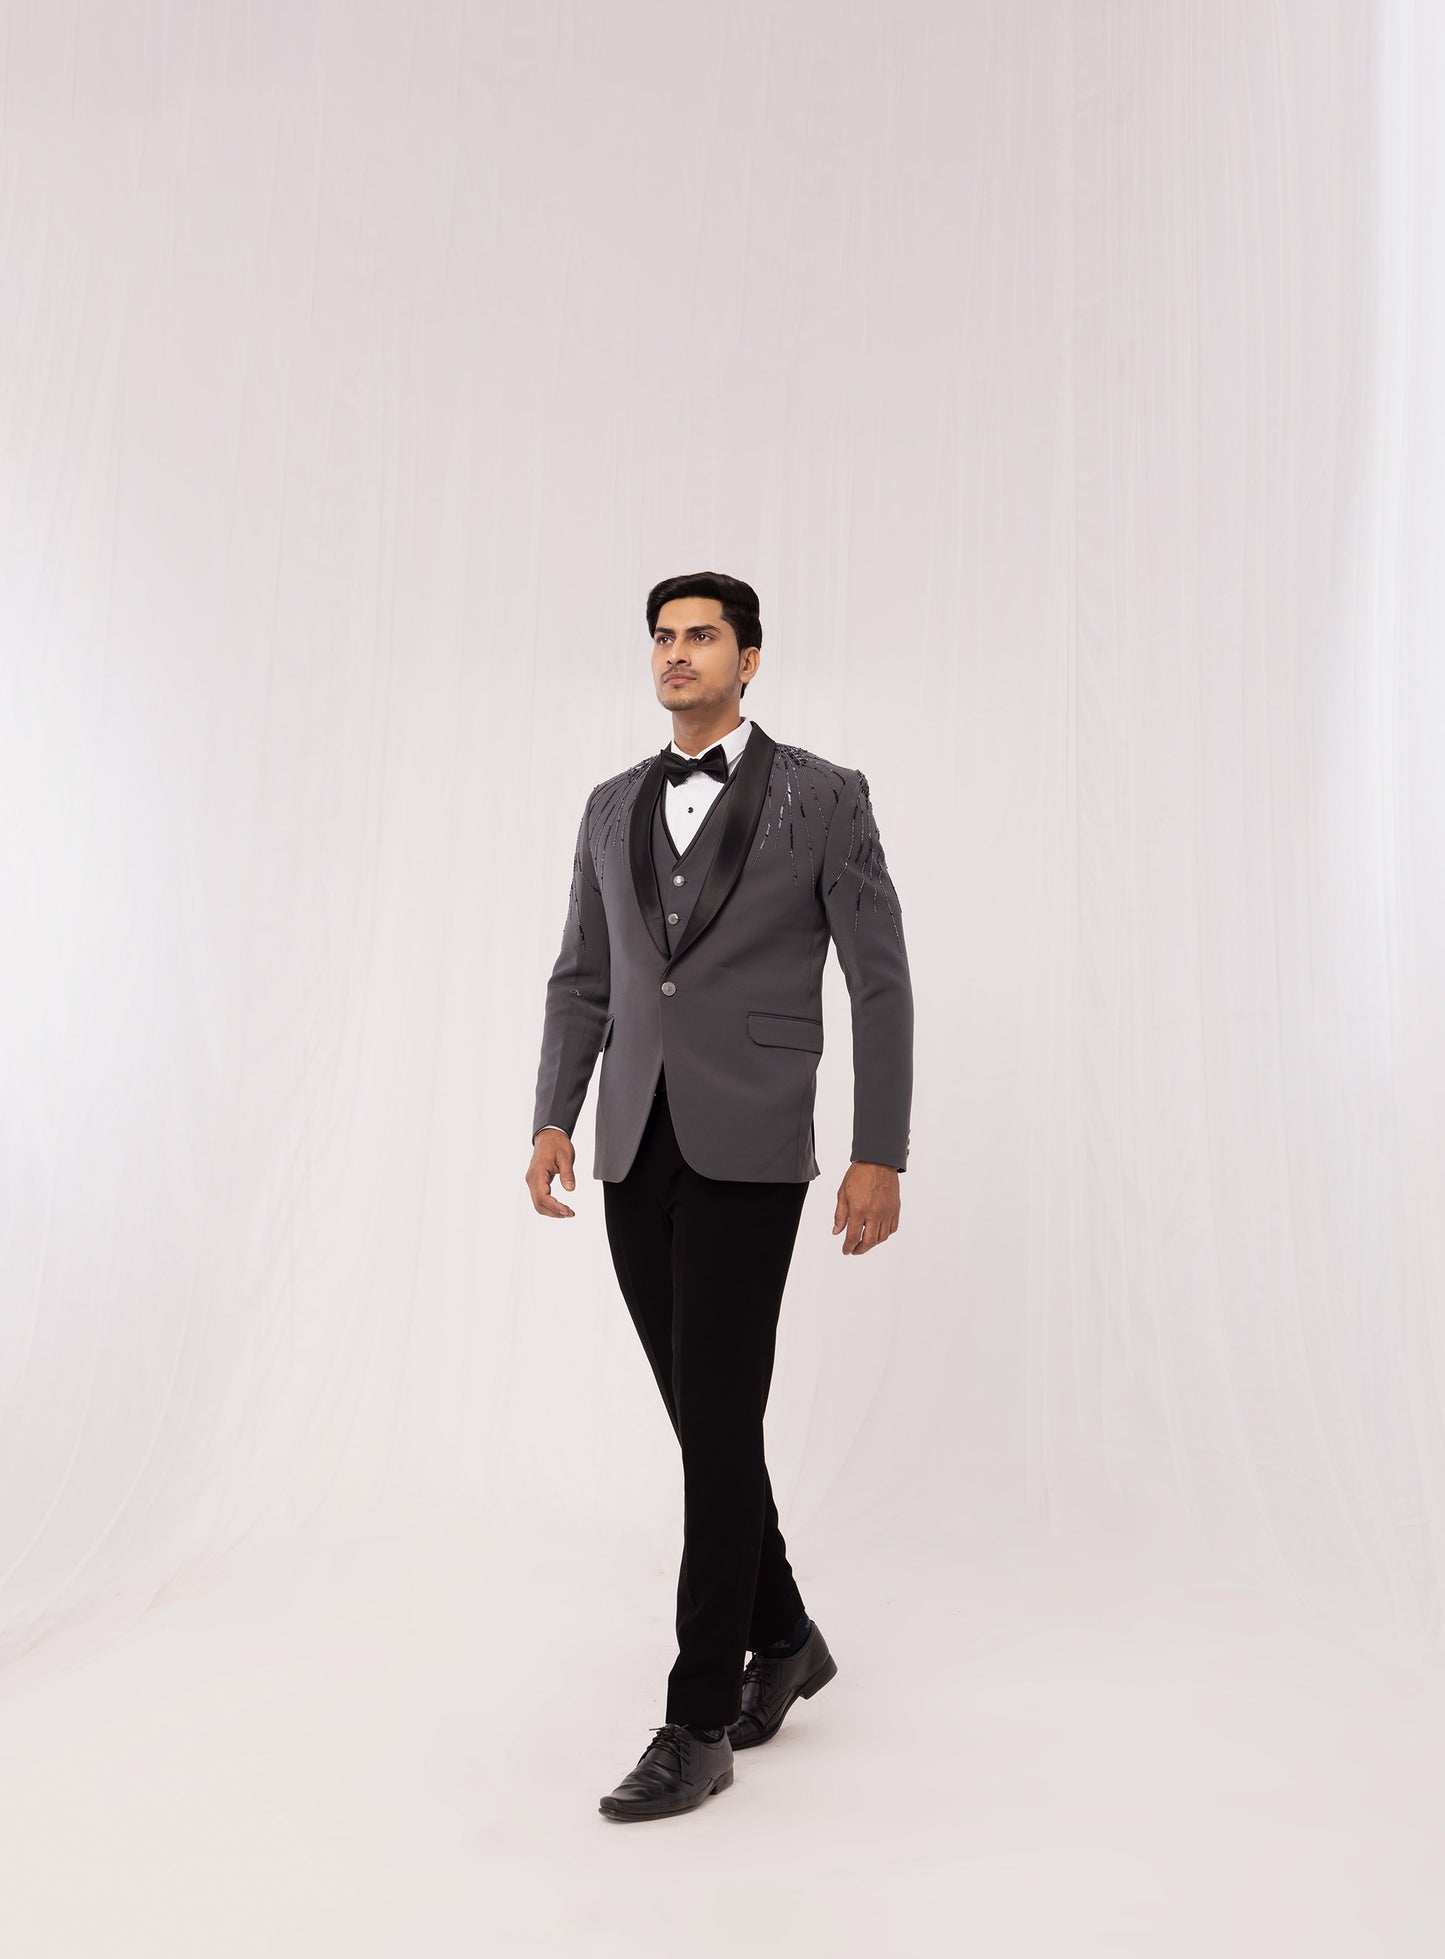 Grey Tuxedo for Reception